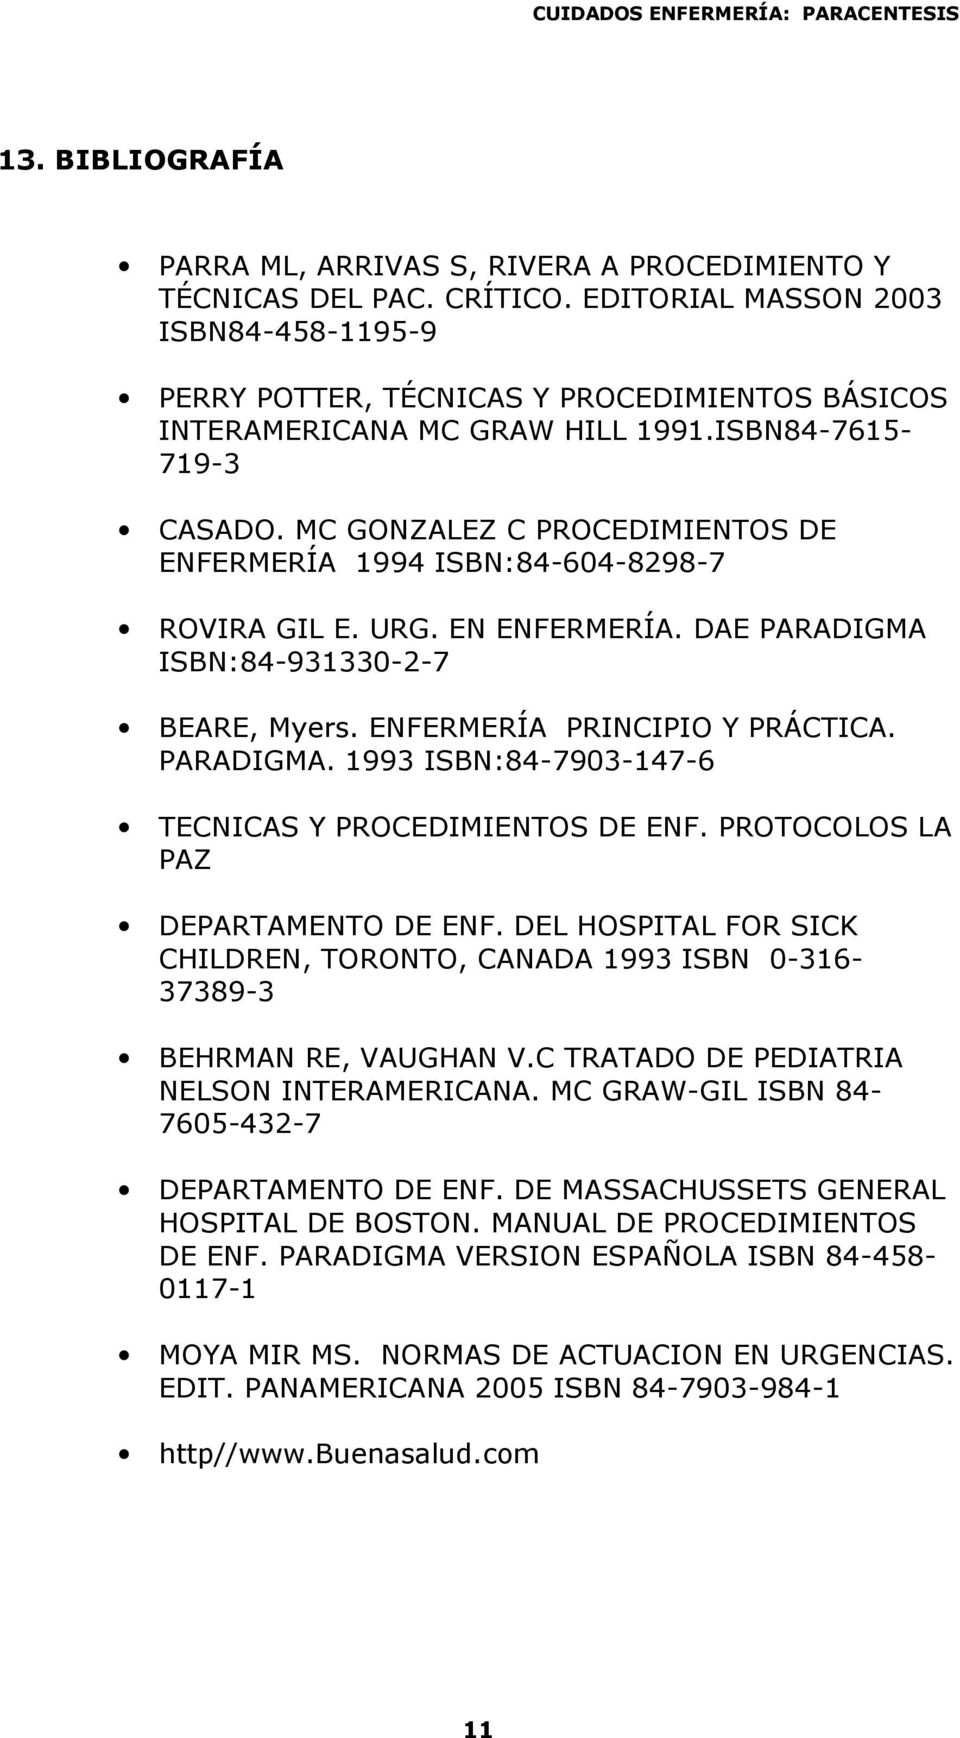 MC GONZALEZ C PROCEDIMIENTOS DE ENFERMERÍA 1994 ISBN:84-604-8298-7 ROVIRA GIL E. URG. EN ENFERMERÍA. DAE PARADIGMA ISBN:84-931330-2-7 BEARE, Myers. ENFERMERÍA PRINCIPIO Y PRÁCTICA. PARADIGMA. 1993 ISBN:84-7903-147-6 TECNICAS Y PROCEDIMIENTOS DE ENF.